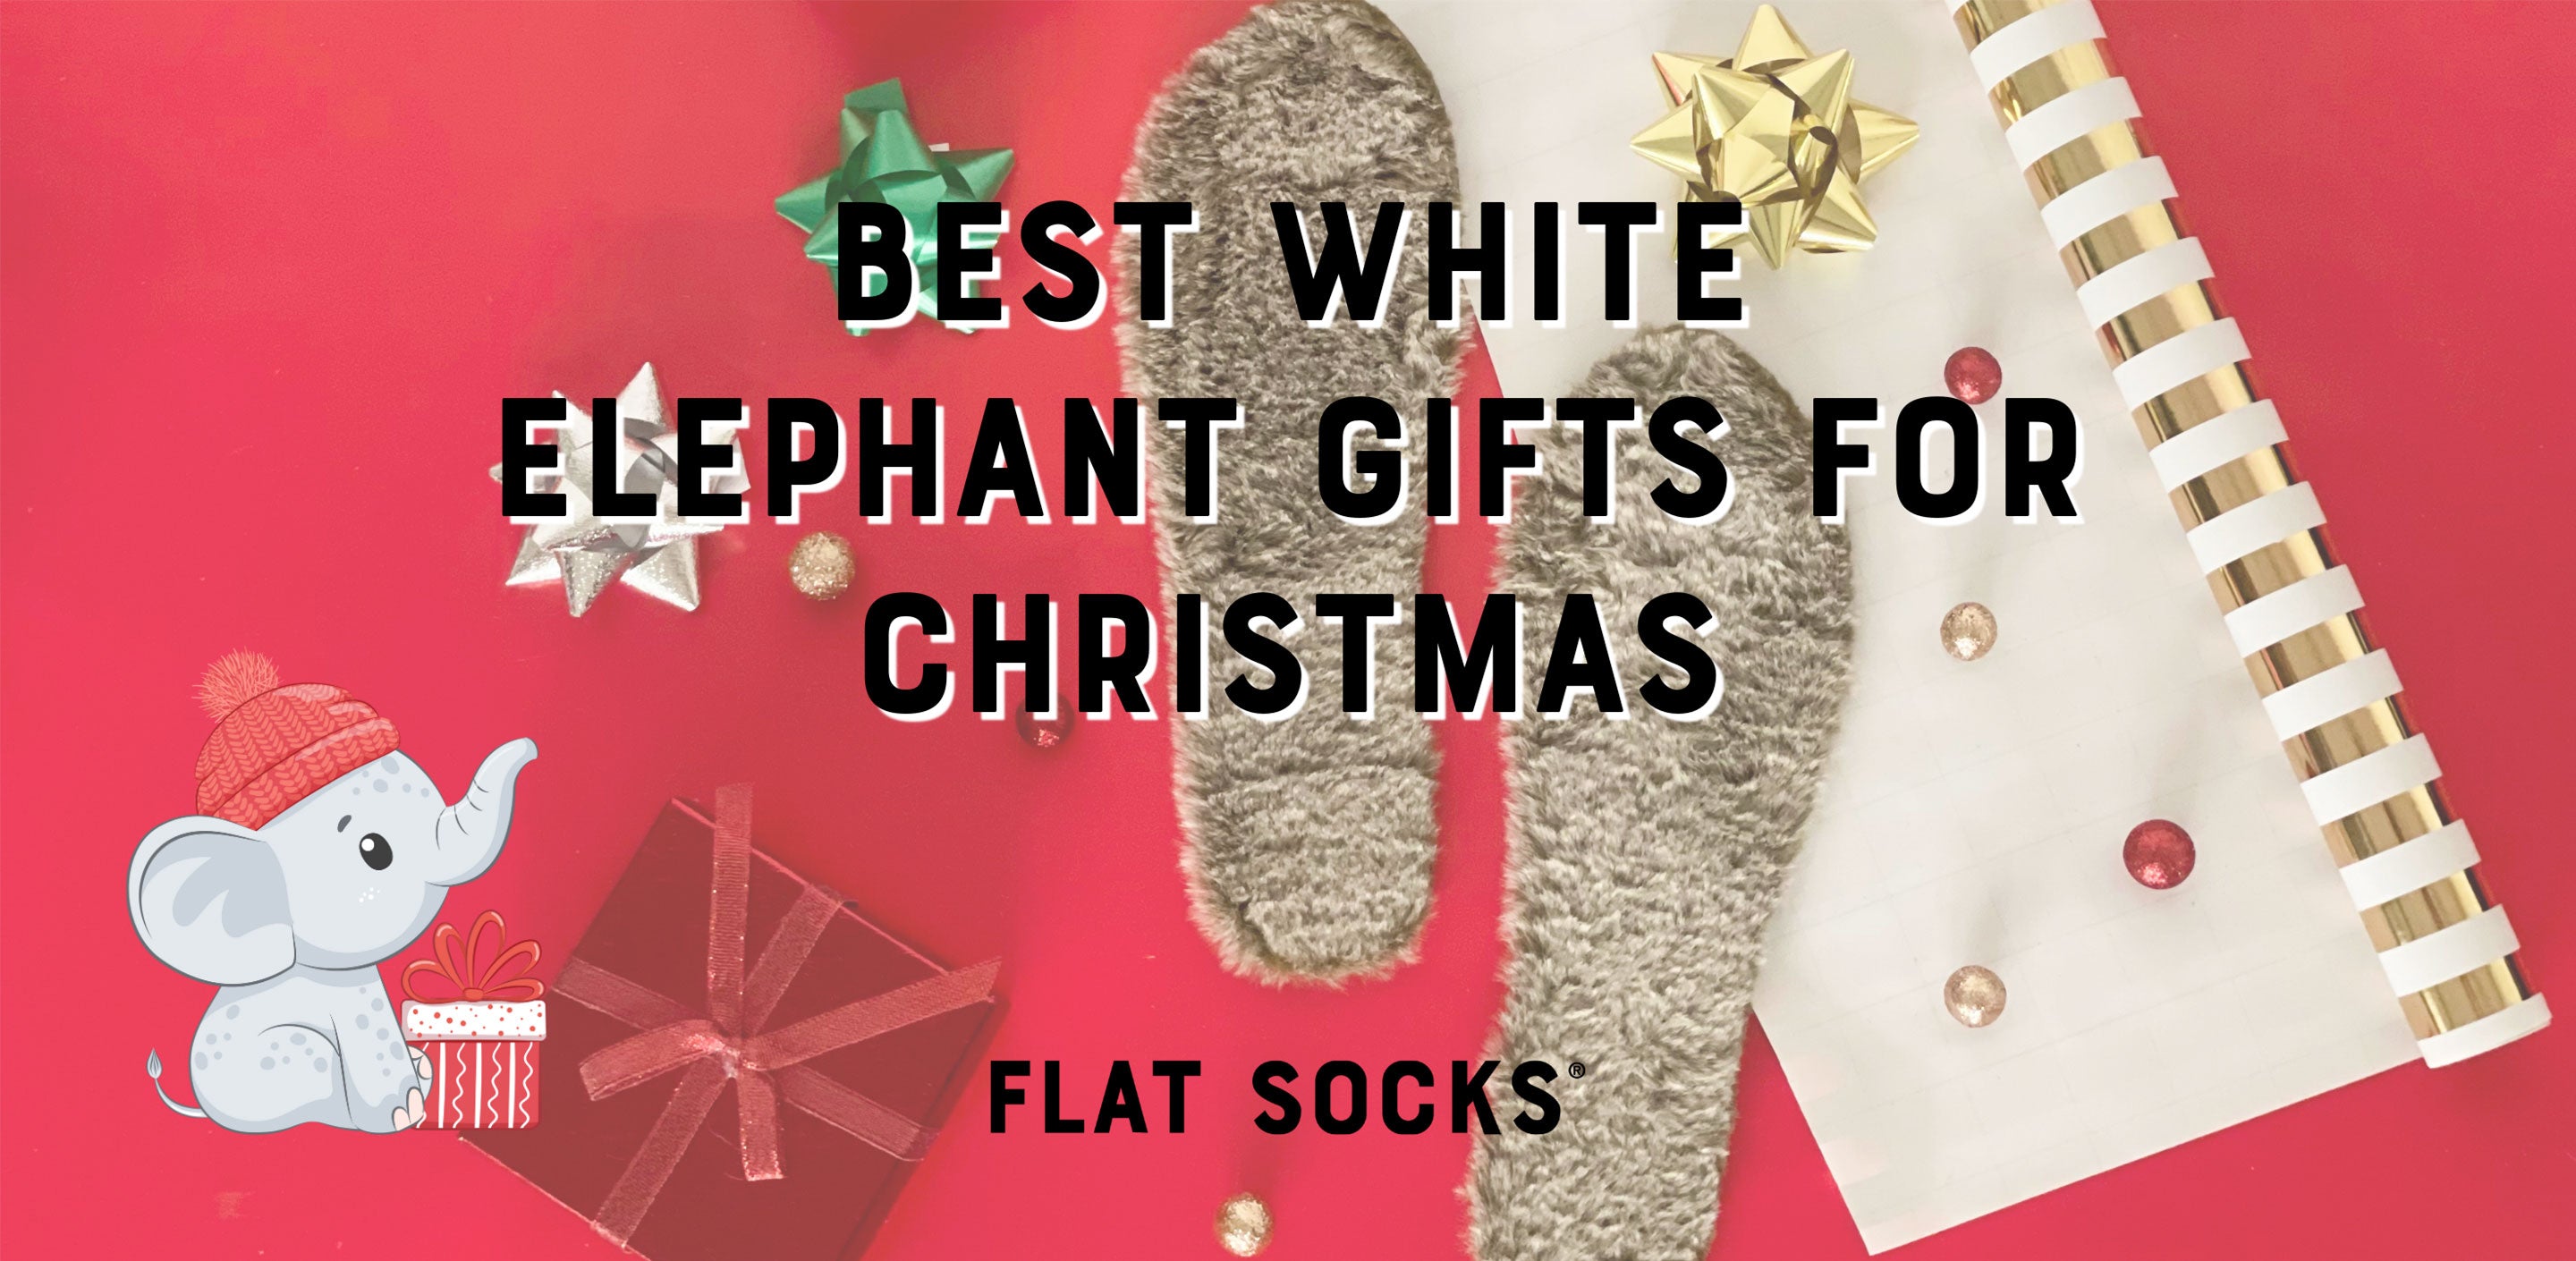 Best White Elephant Gifts for Christmas – FLAT SOCKS